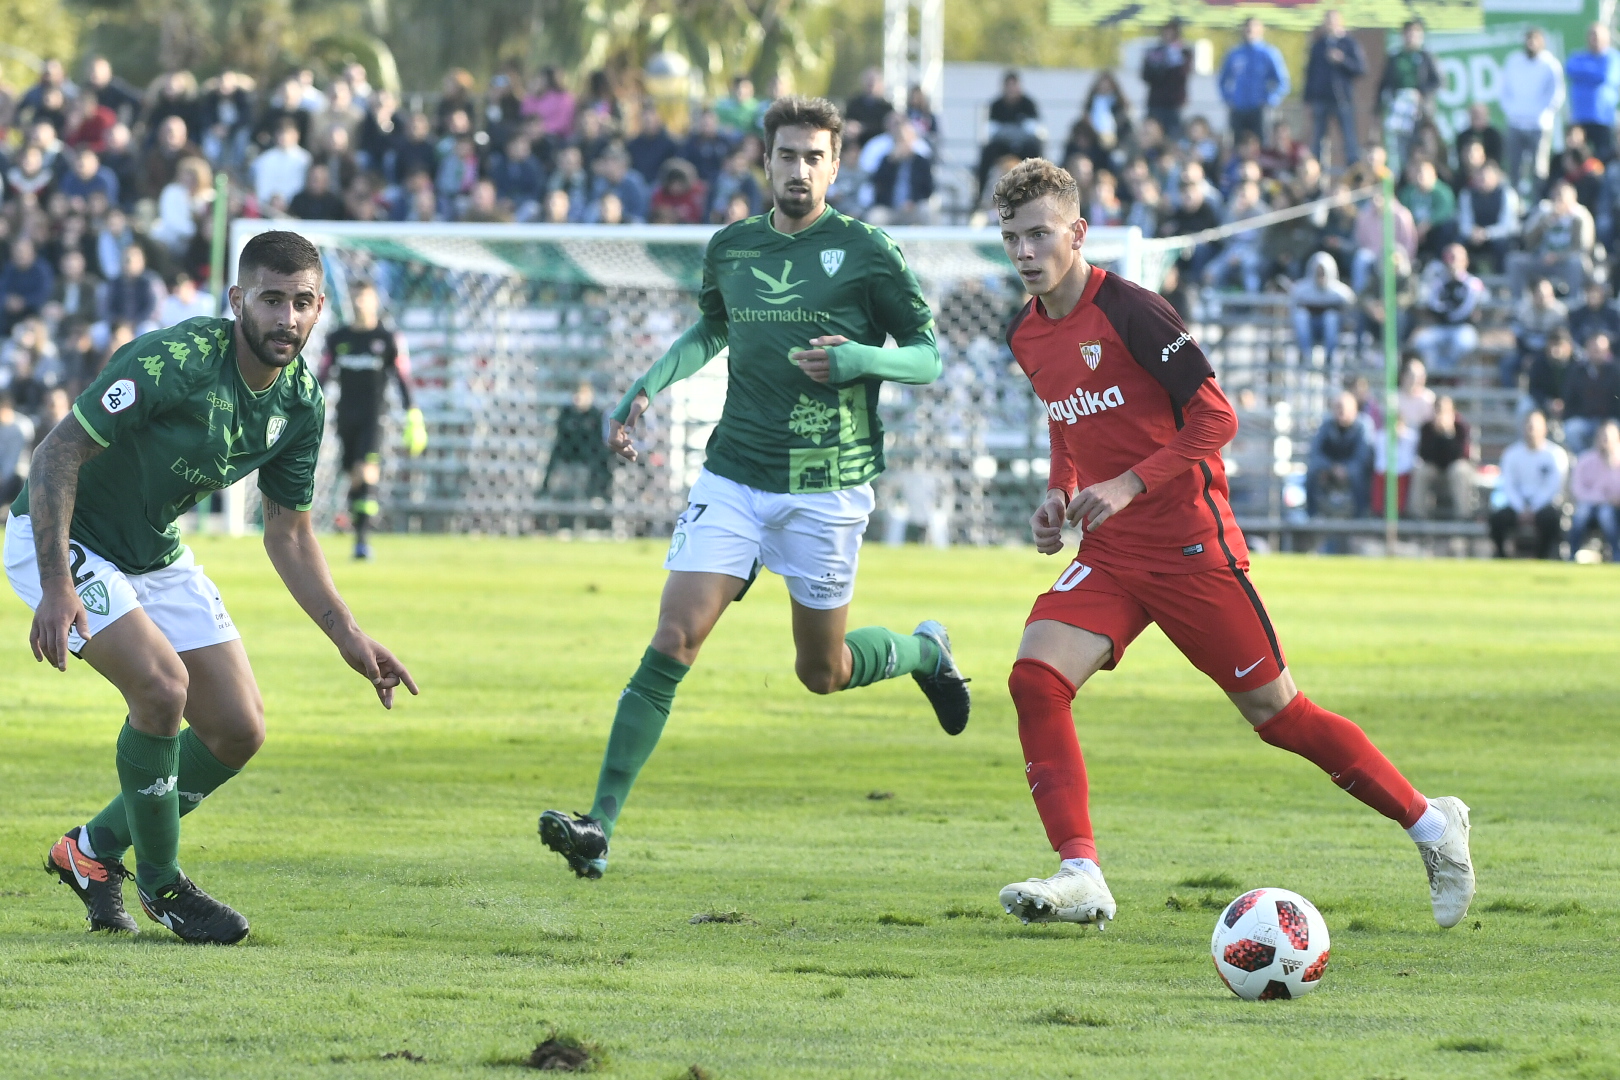 Javi Vázquez making his debut for Sevilla FC